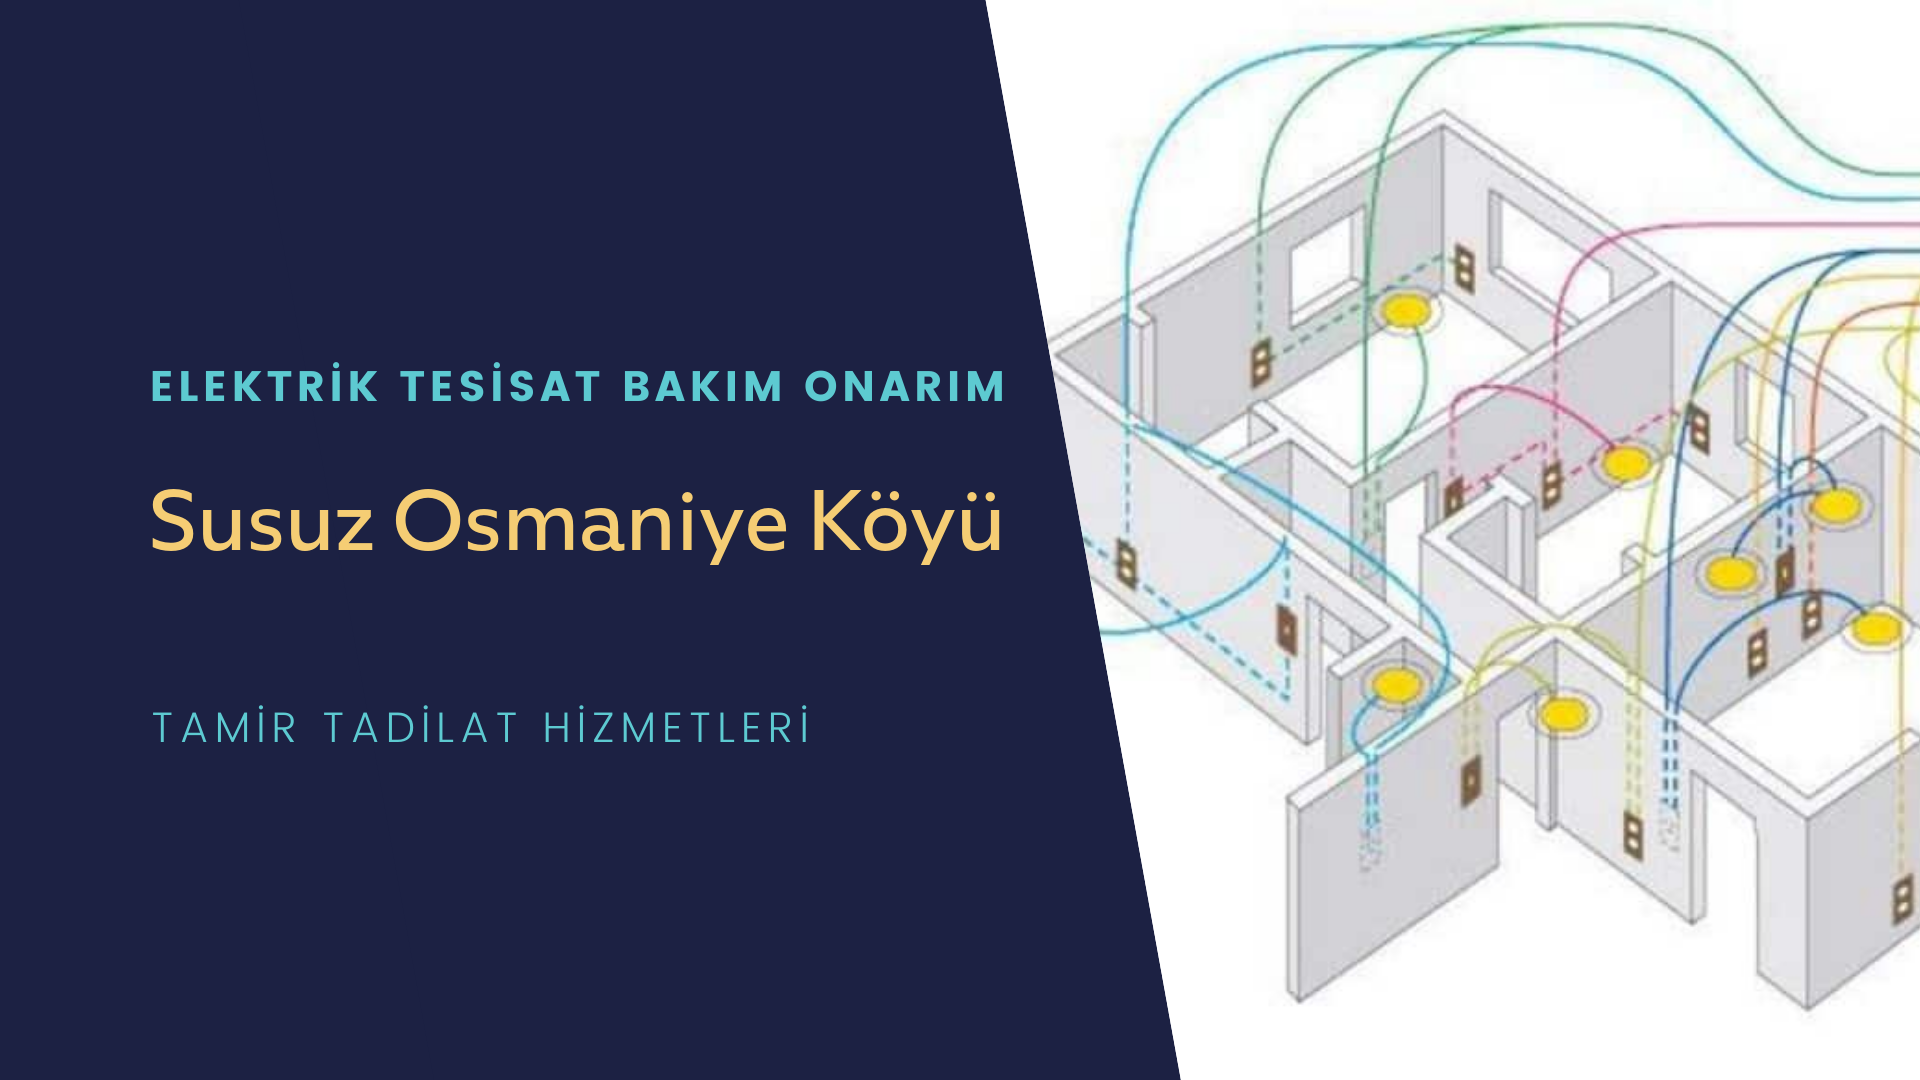 Susuz Osmaniye Köyü  elektrik tesisatı ustalarımı arıyorsunuz doğru adrestenizi Susuz Osmaniye Köyü elektrik tesisatı ustalarımız 7/24 sizlere hizmet vermekten mutluluk duyar.